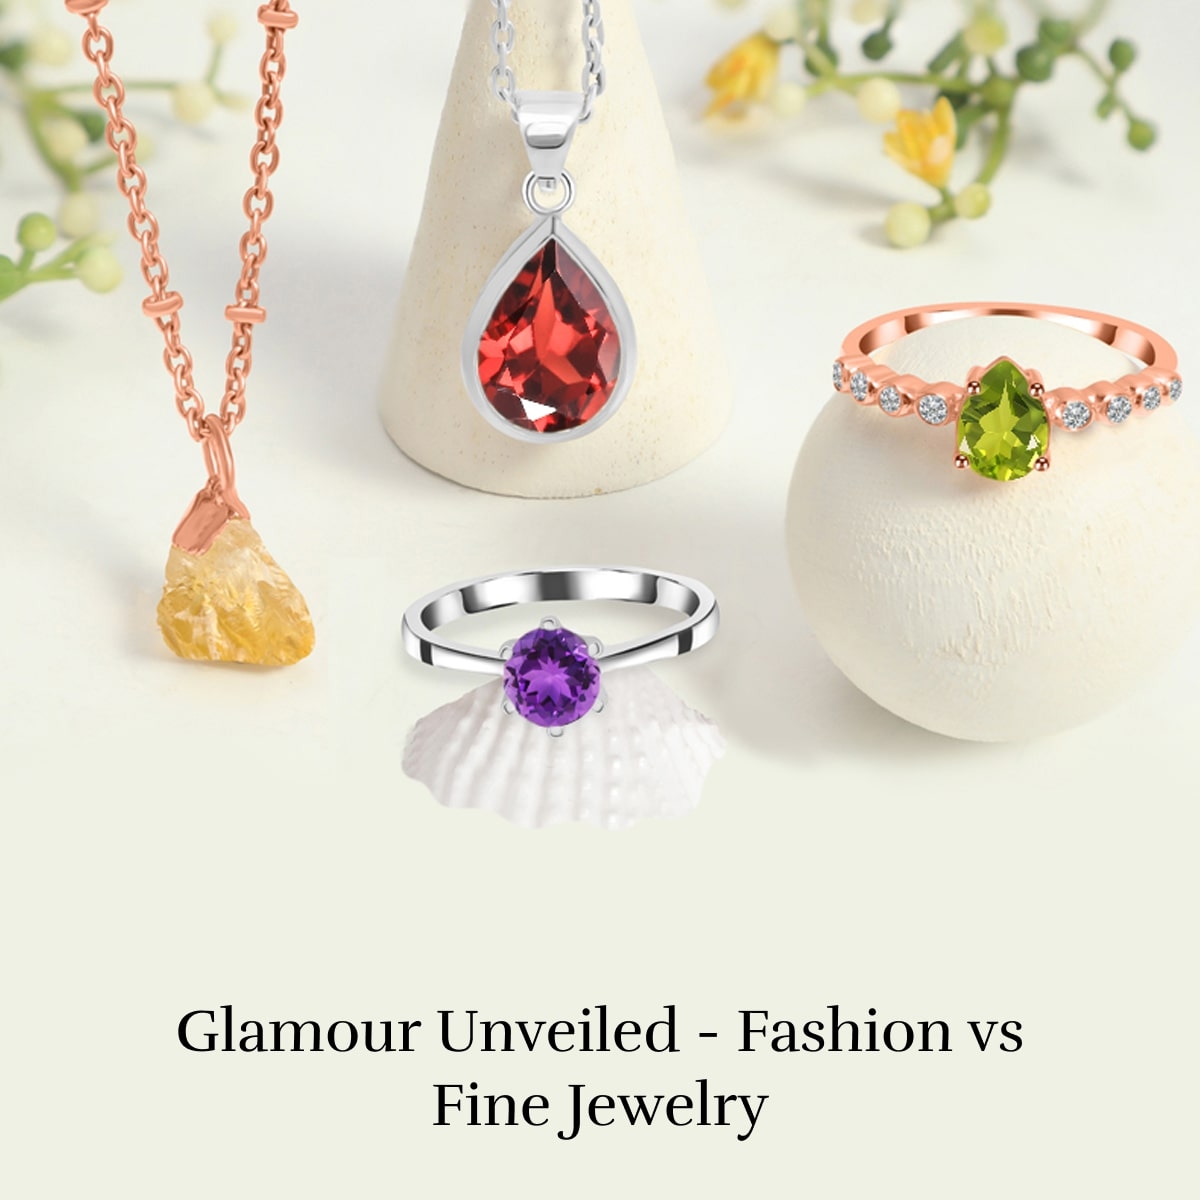 Fashion jewelry vs fine jewelry